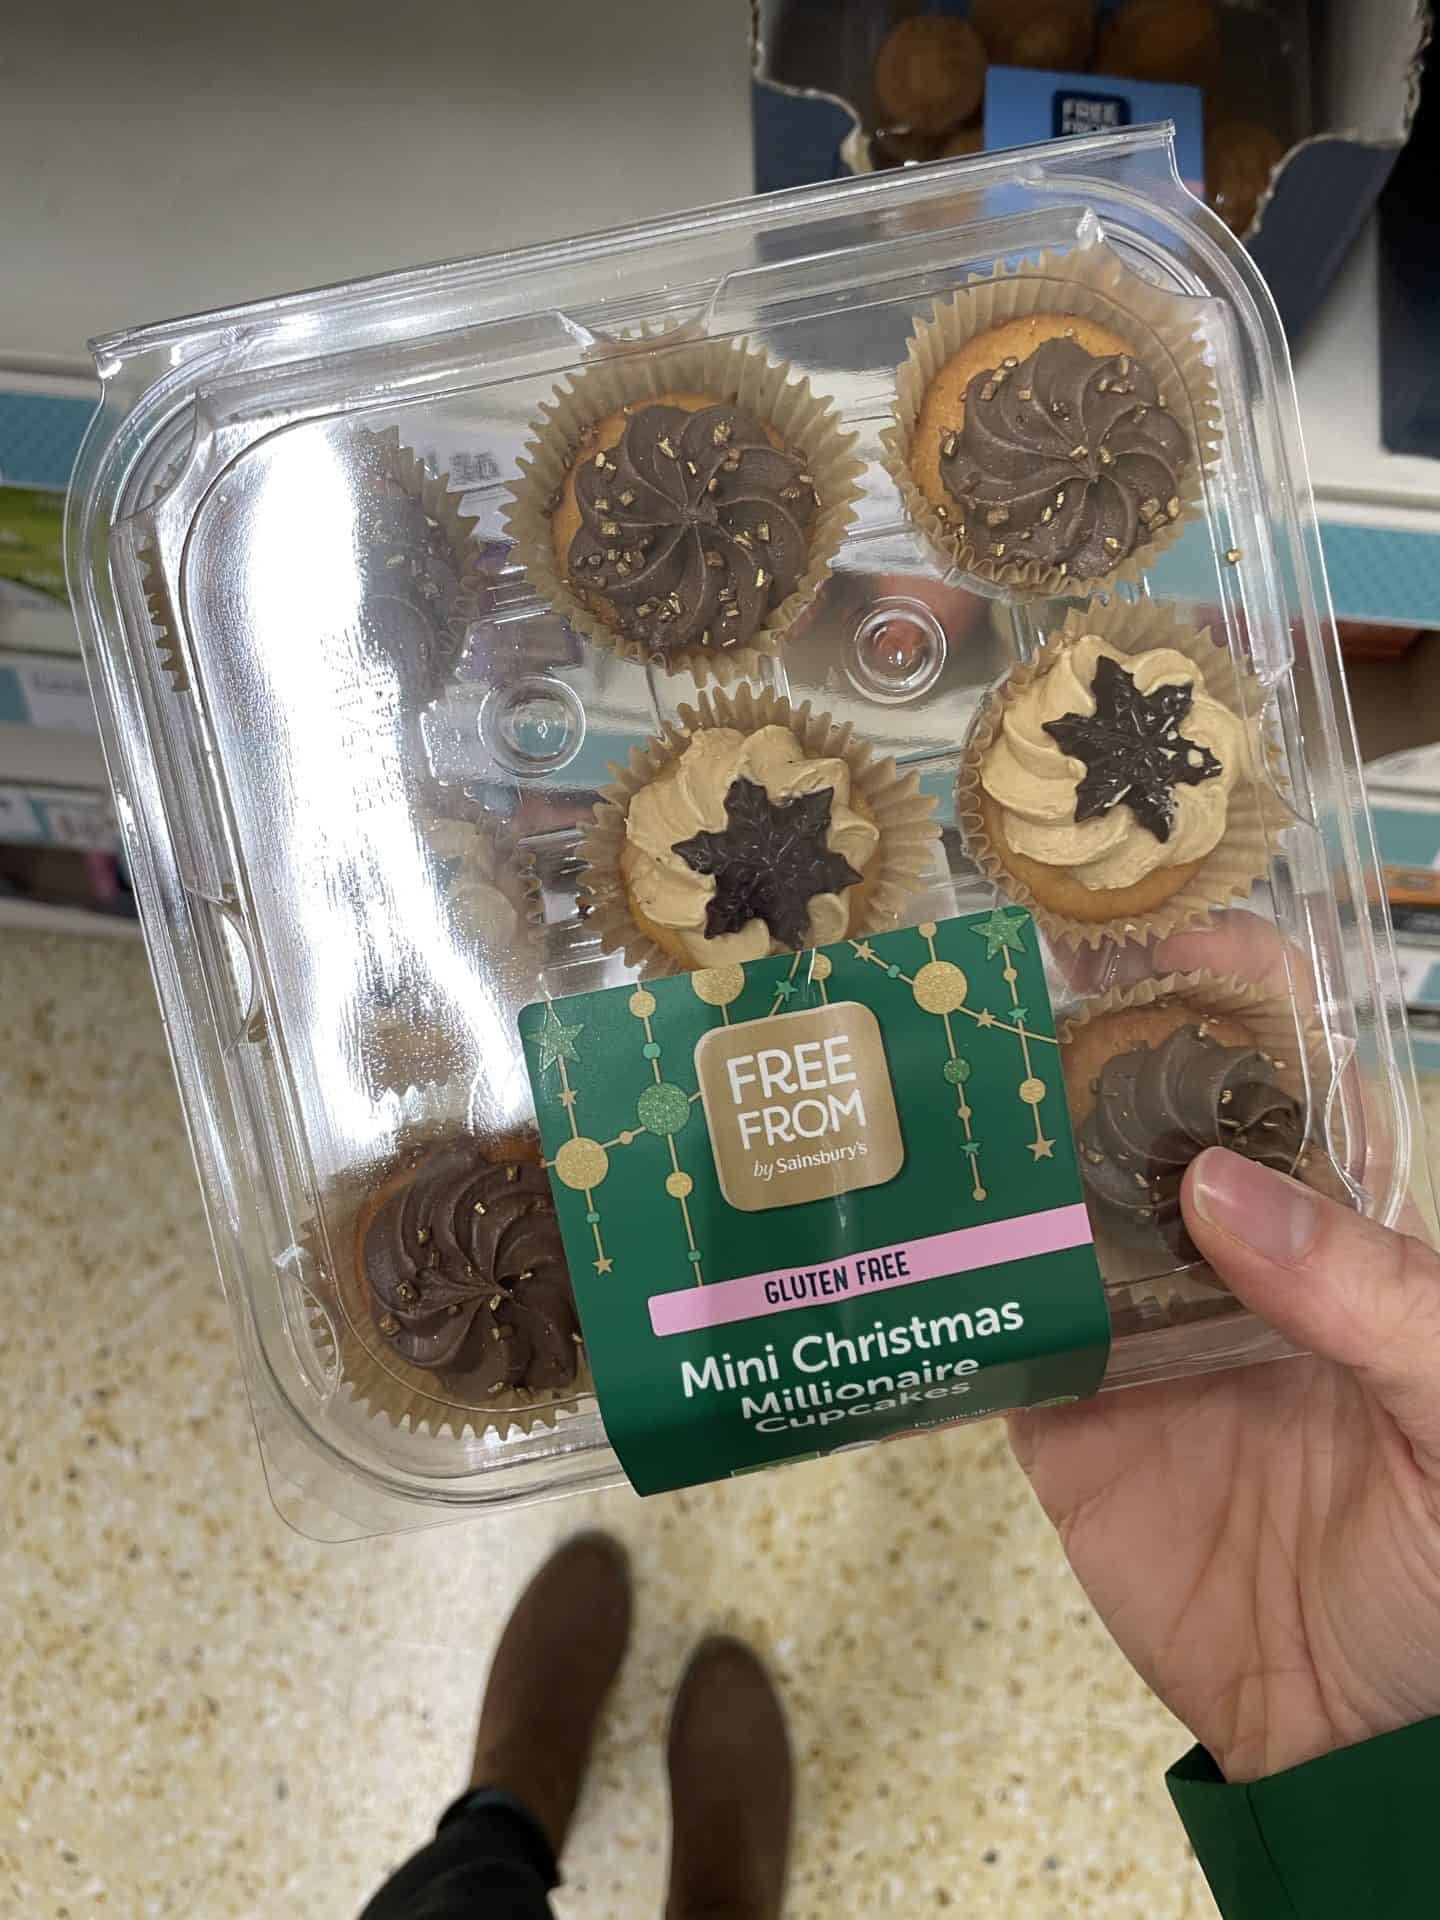 sainsbury's gluten free christmas cupcakes 